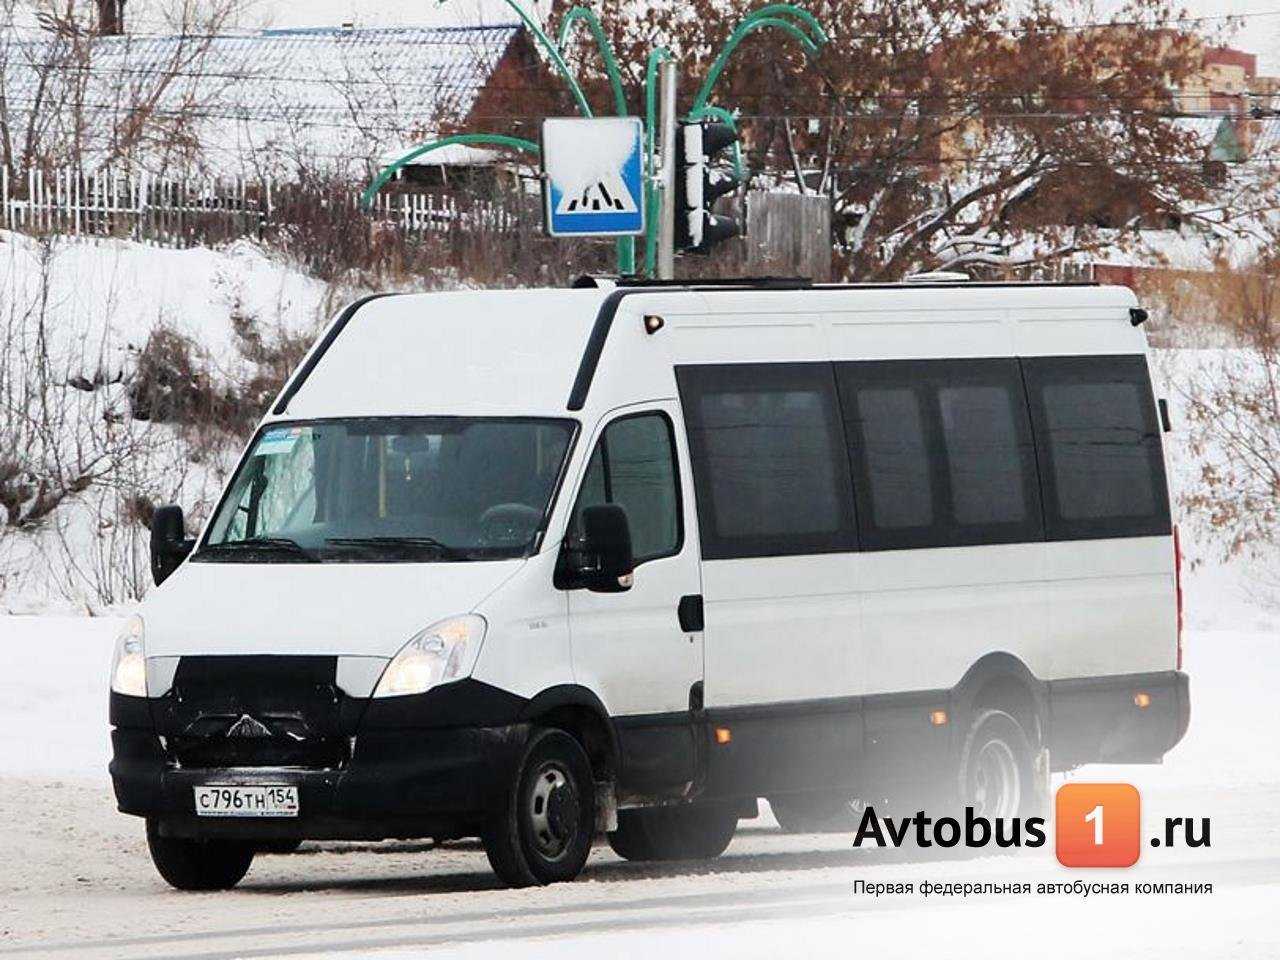 транспортная компания Автобус1.ру фото 1